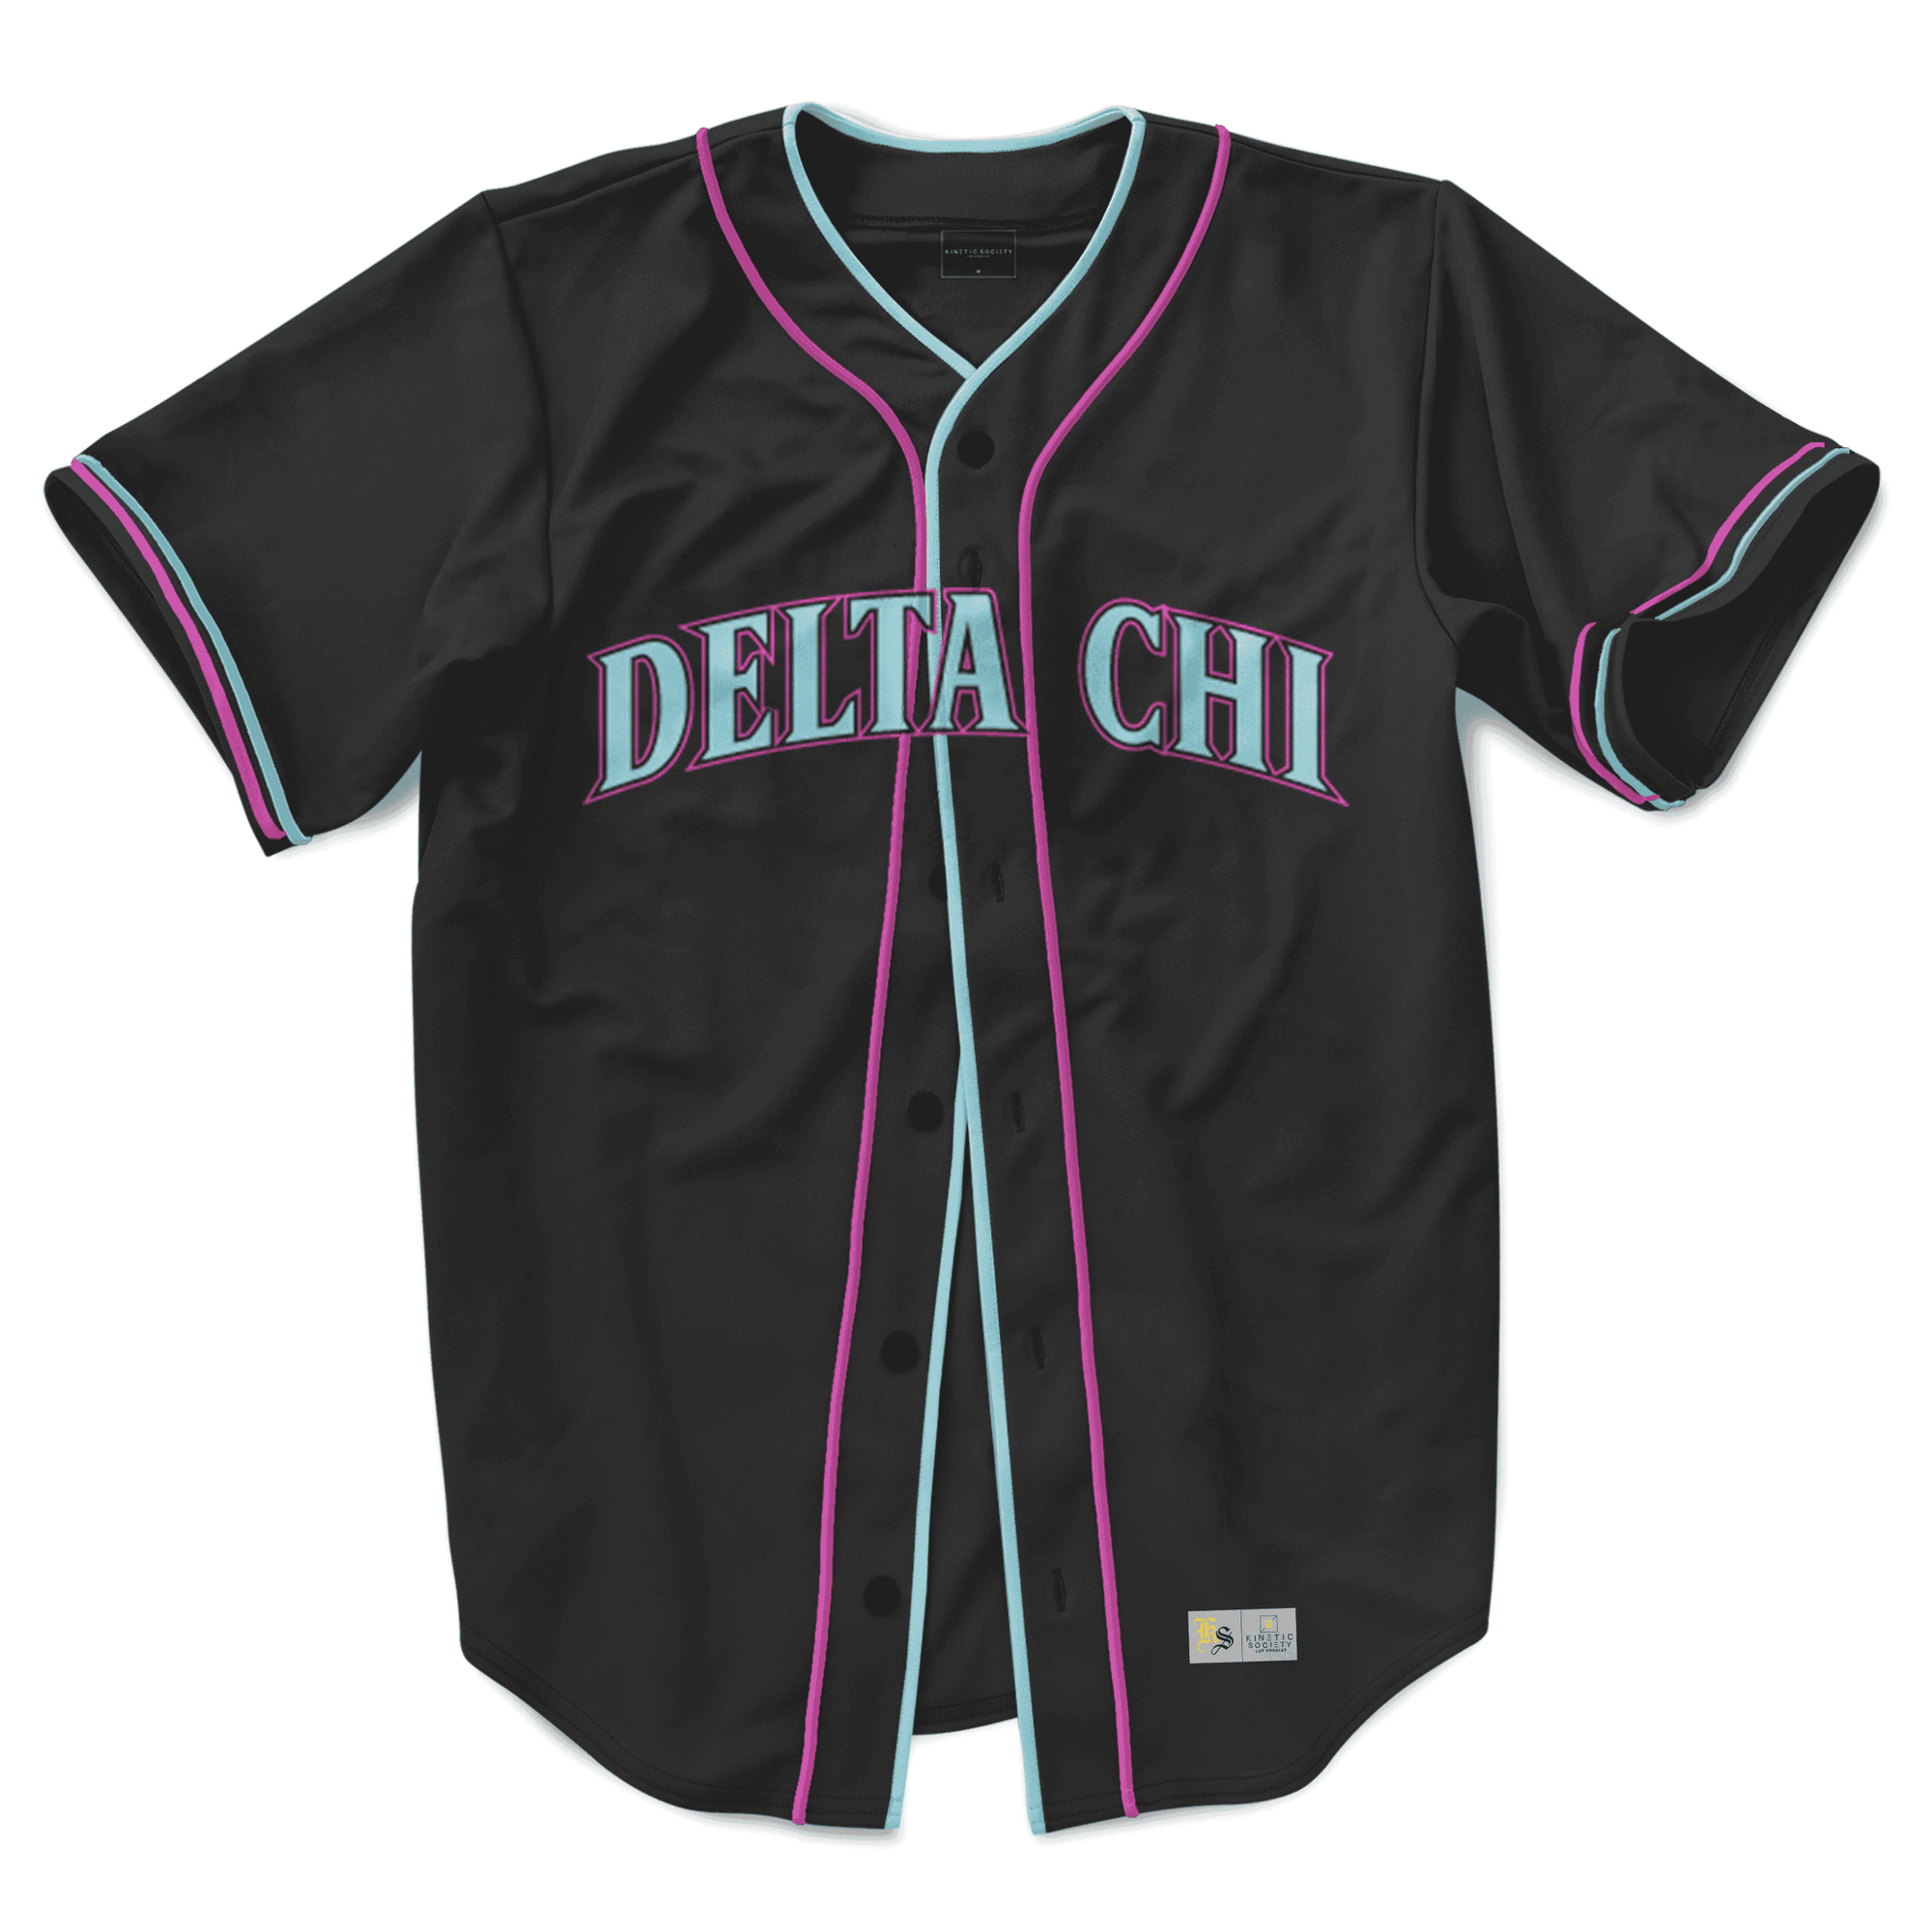 Delta Chi - Neo Nightlife Baseball Jersey